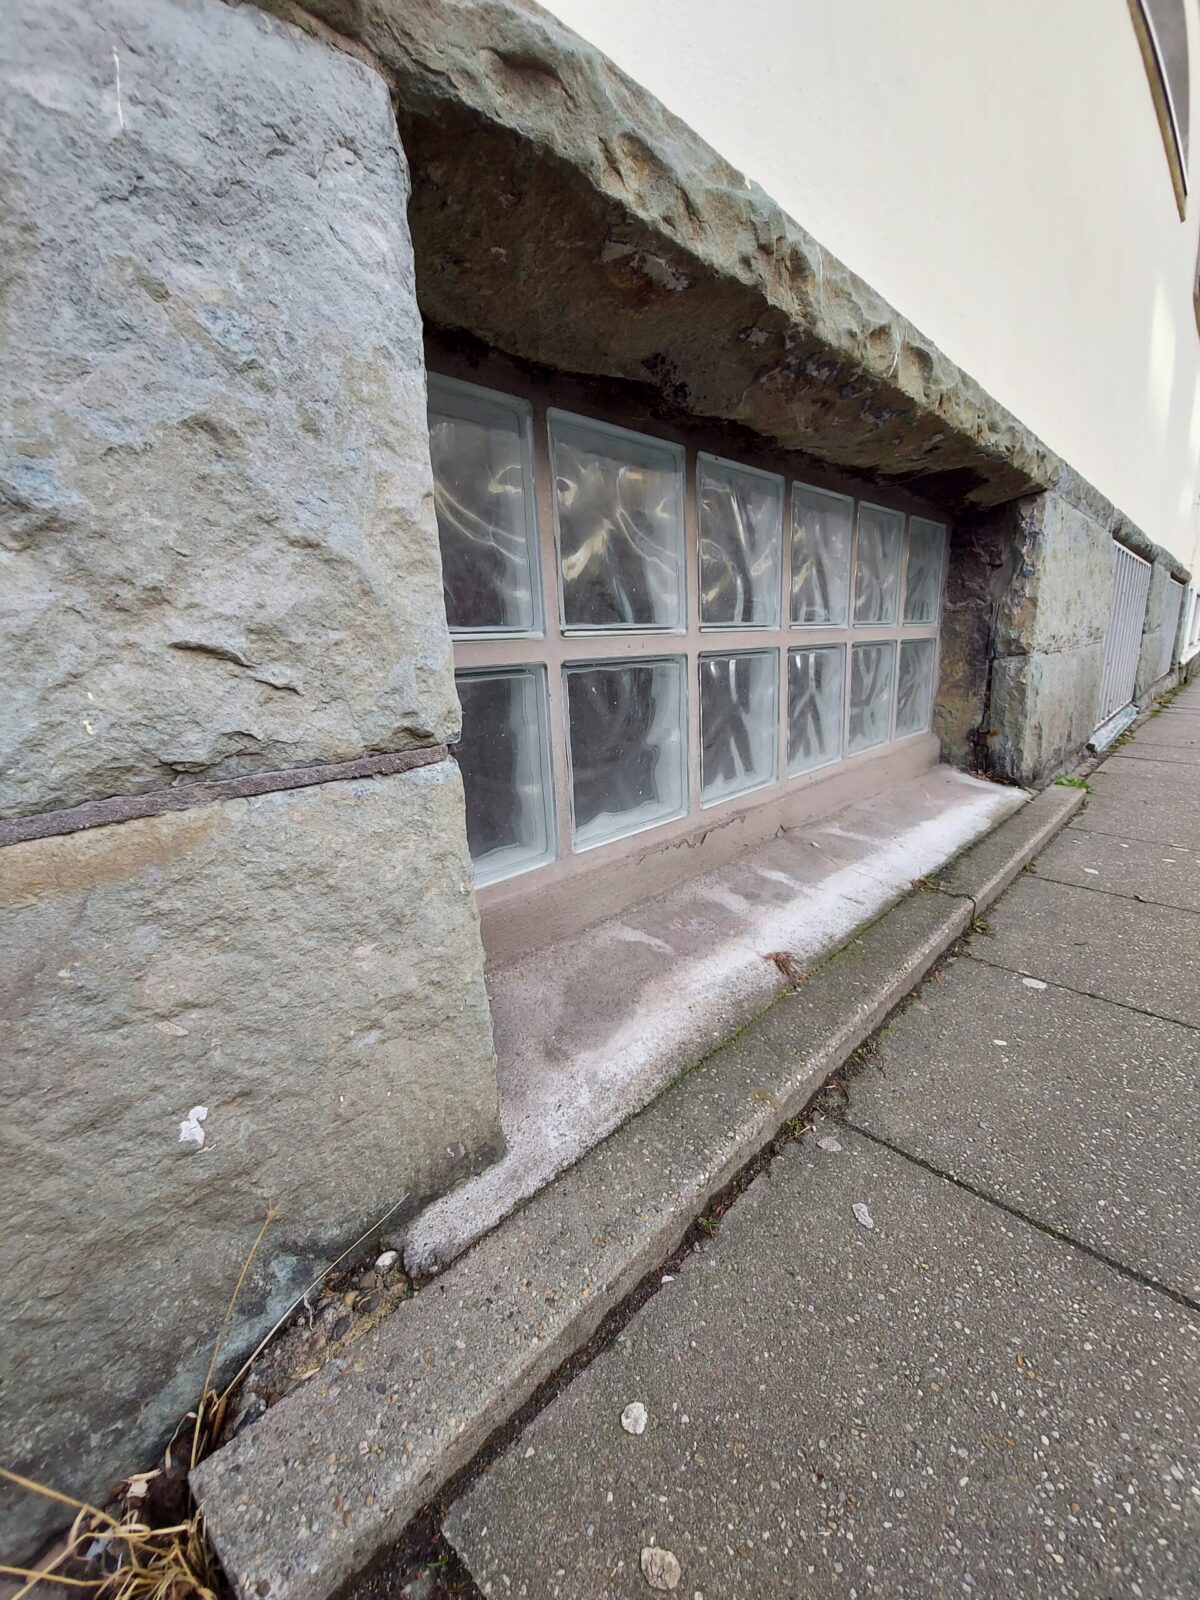 Beispiel-Foto zum Thema "Little Stages" im Stadtraum, ein Fenster im Souterrain, mit weißen Glasbausteinen, verkleidet mit Sandsteinplatten